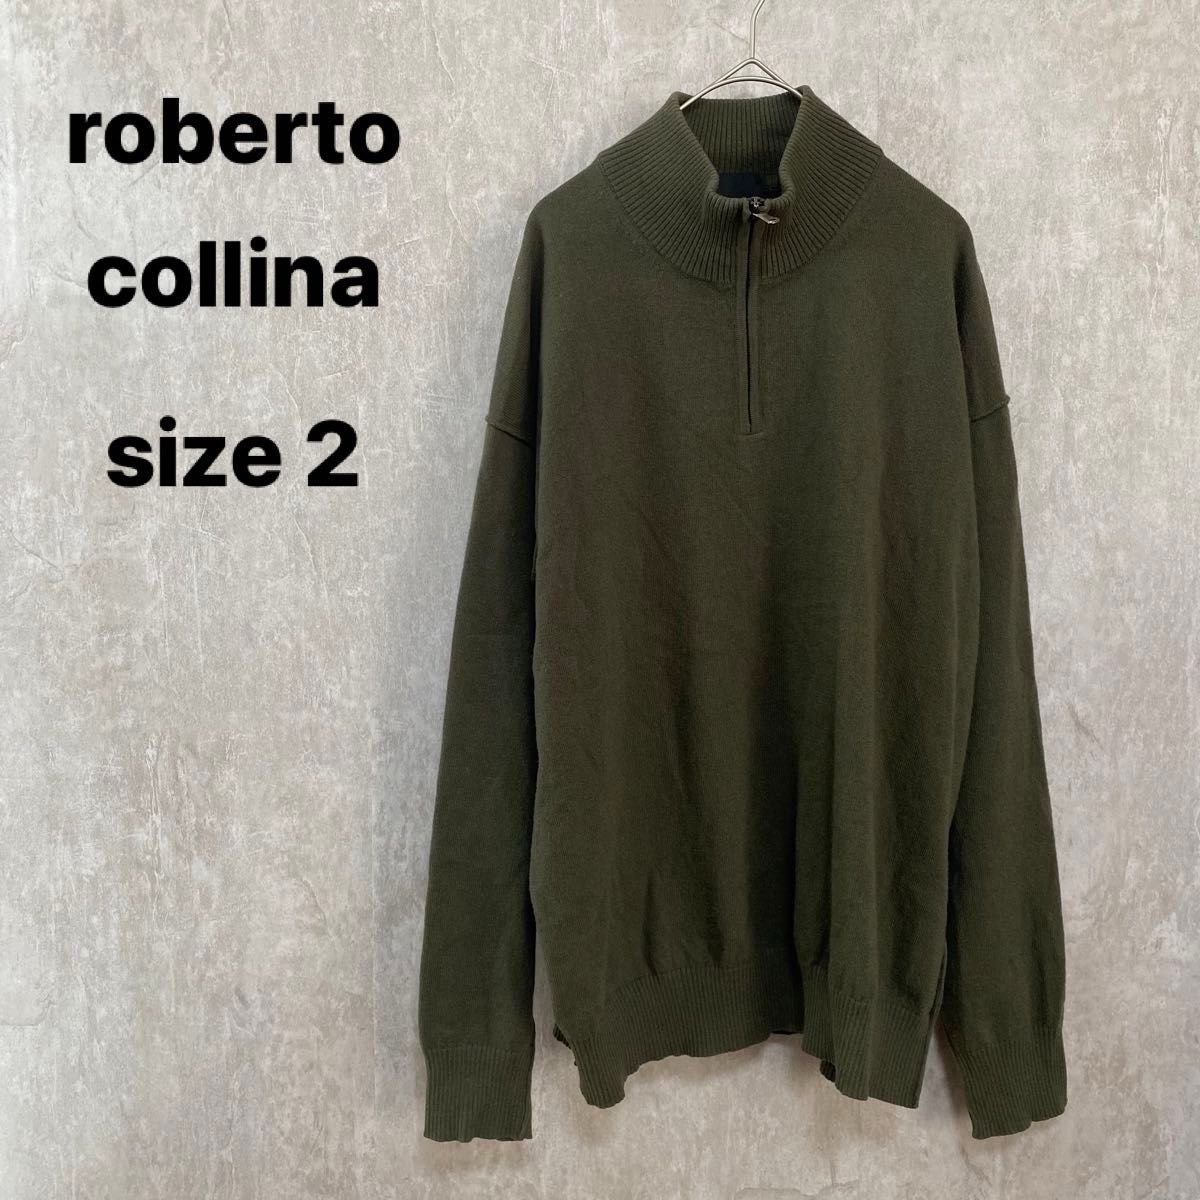 roberto collina ハーフジップニット ロベルトコリーナ サイズ2  セーター